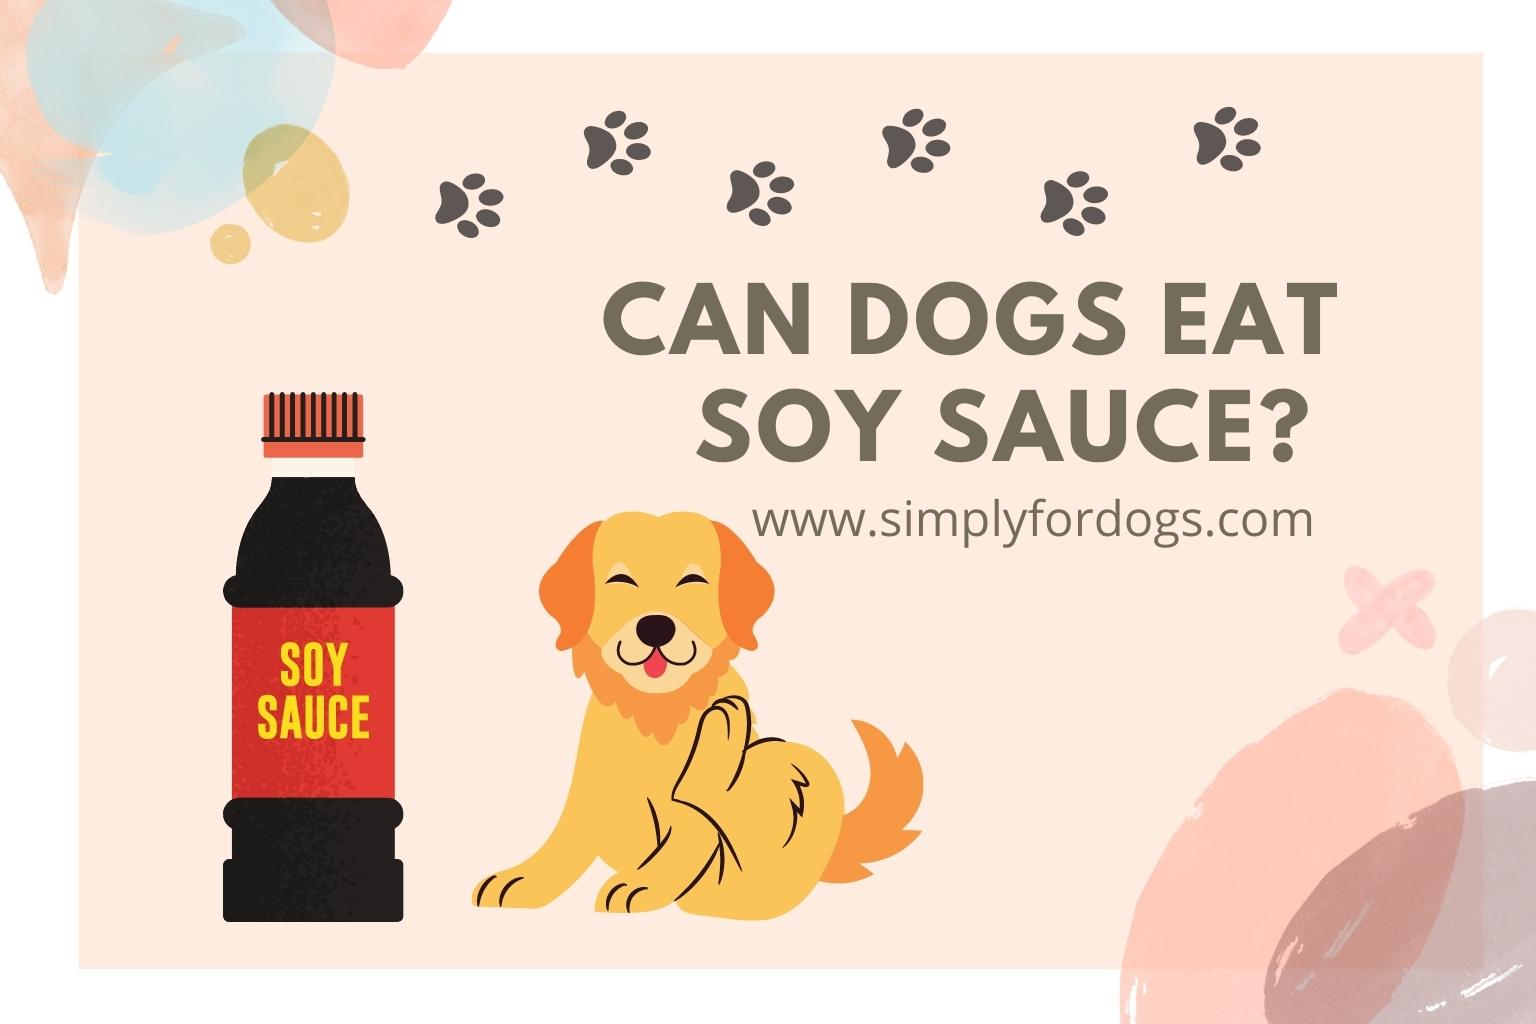 Соус Dog. Sauce for Dogs. Dogs eat перевод на русский